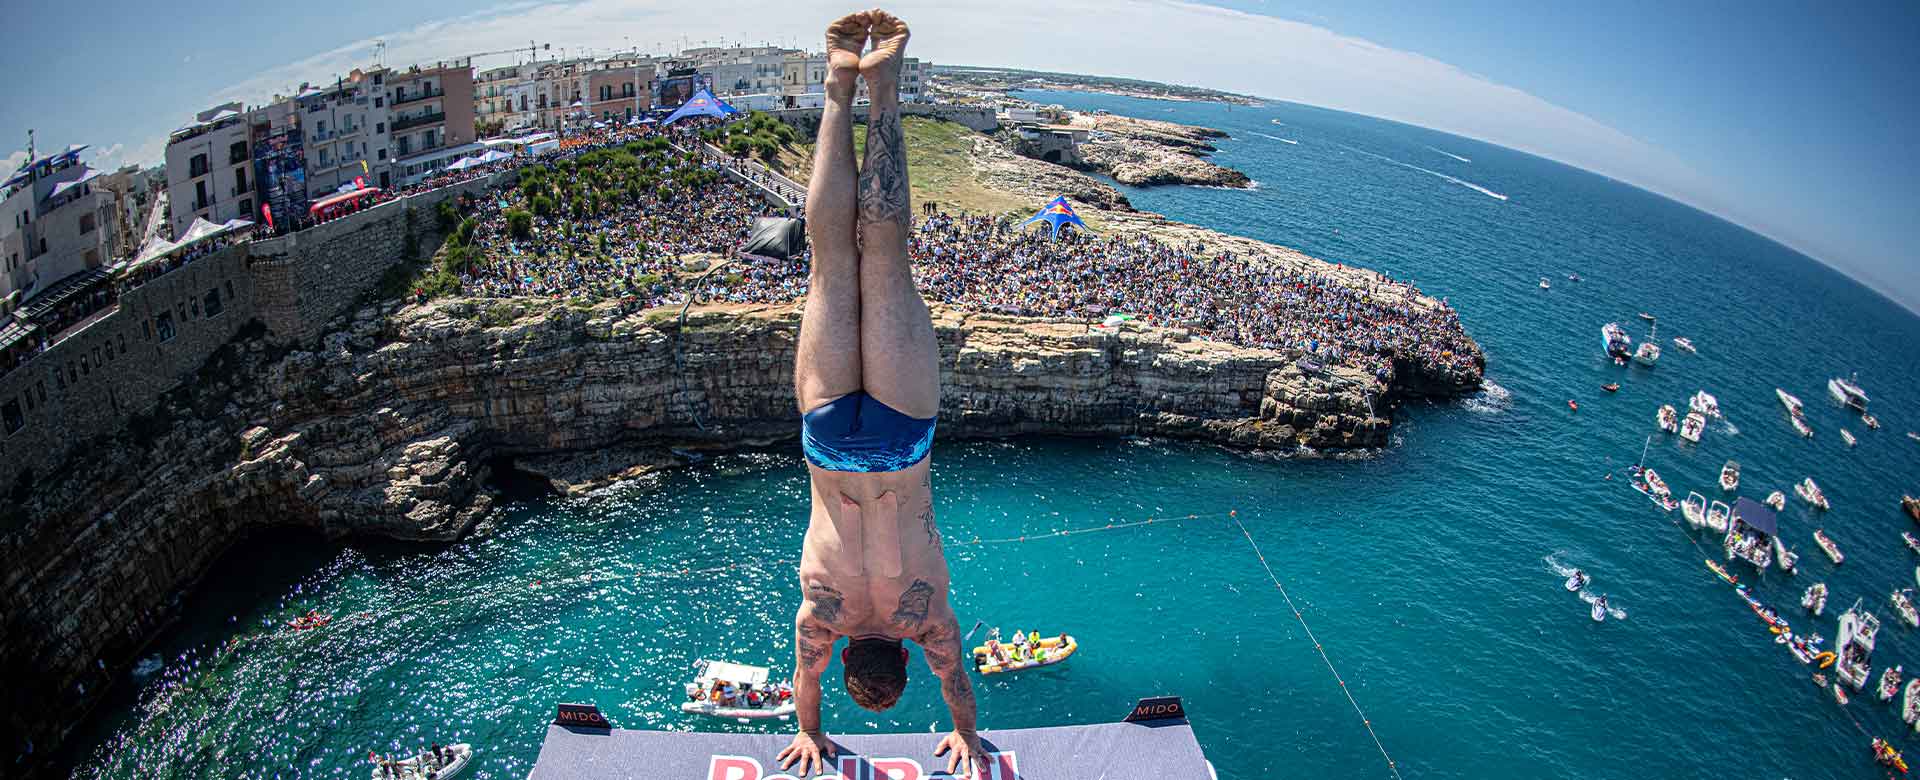 Alessandro De Rose alla Red Bull Cliff Diving World Series a Polignano a Mare (BA), il 2 giugno 2019